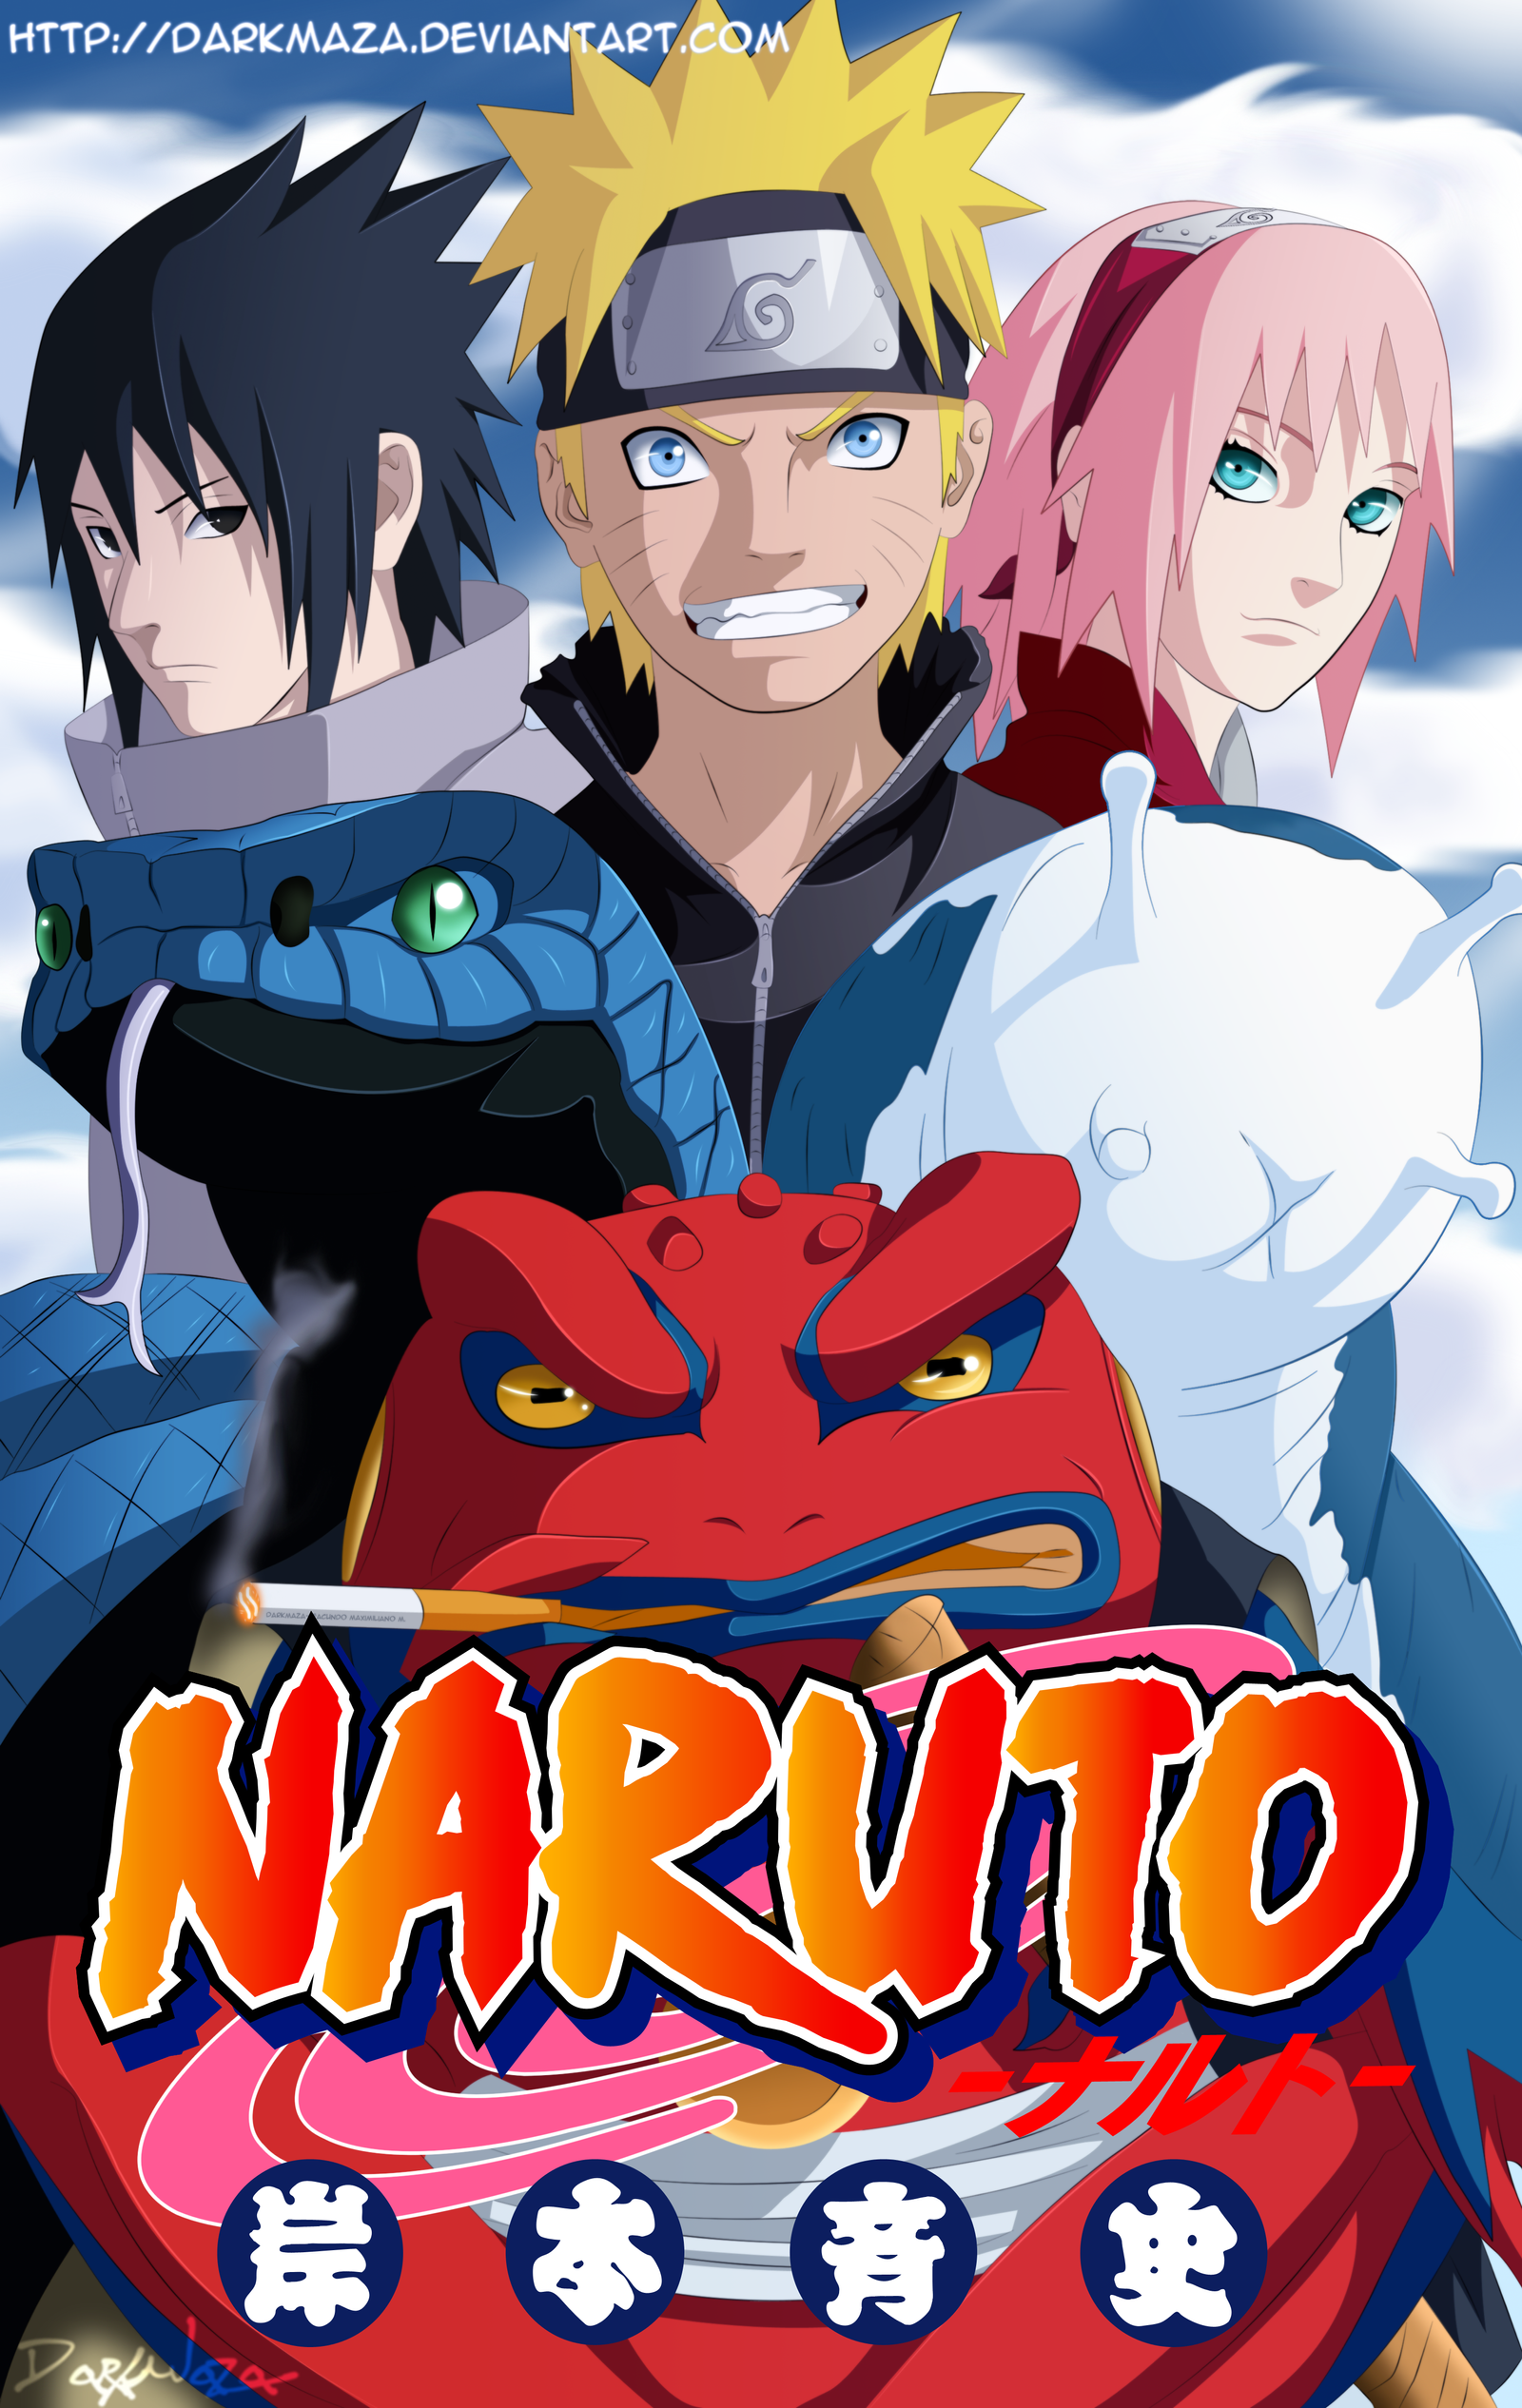 2 Demigods  Naruto sasuke sakura, Naruto shippuden anime, Naruto